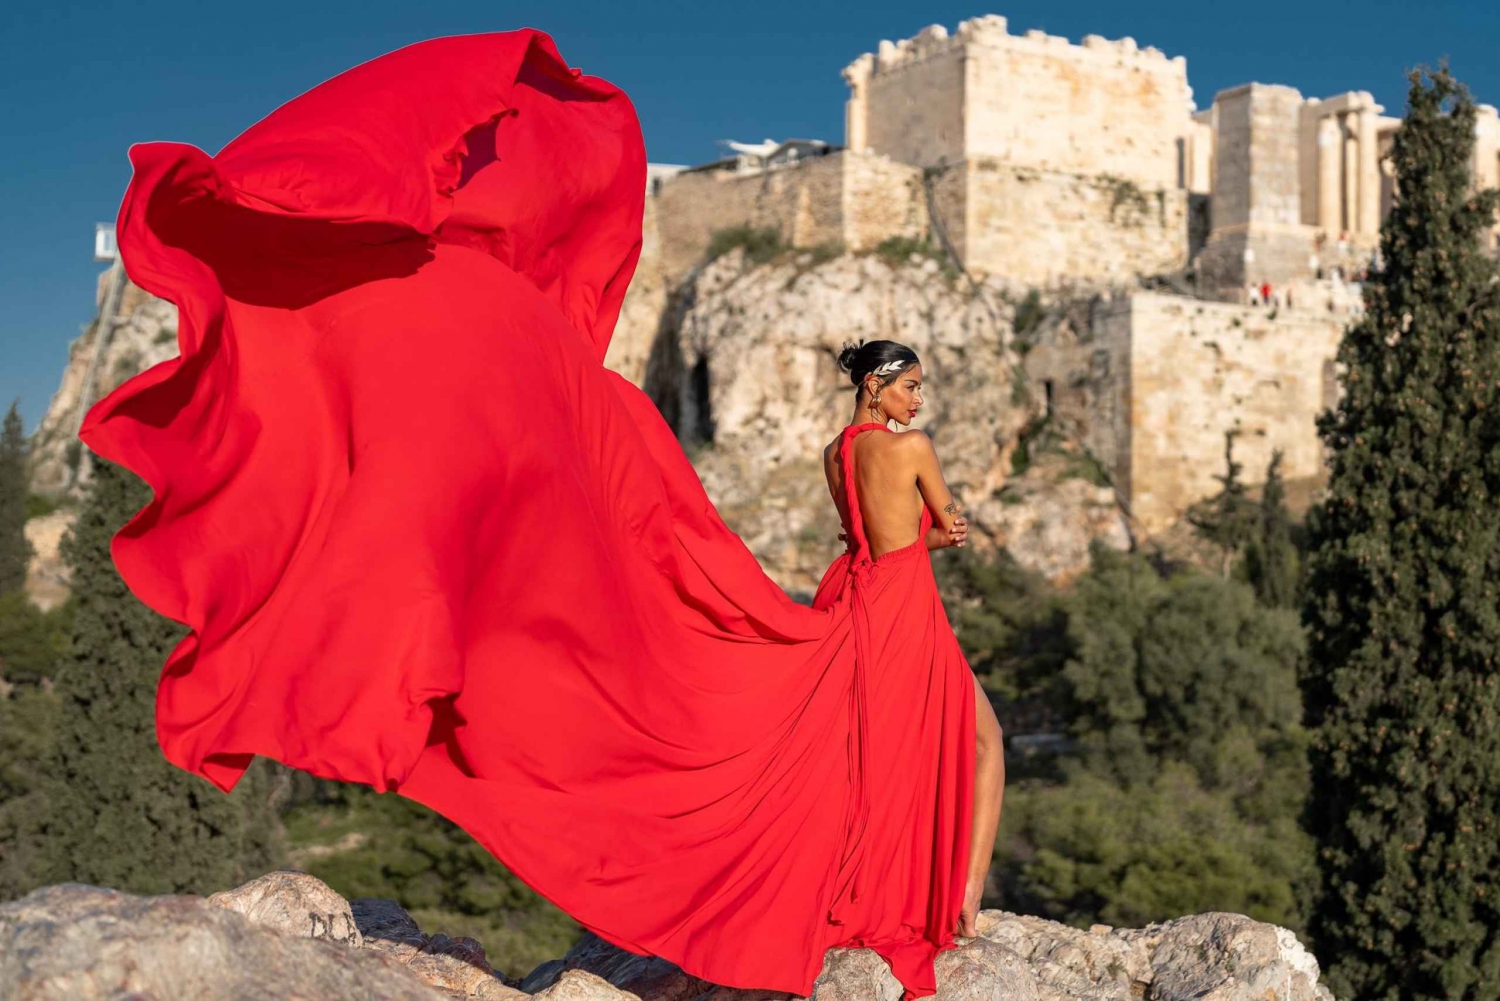 Aten: Fotosession med flygande klänning 'Marilyn-paketet'